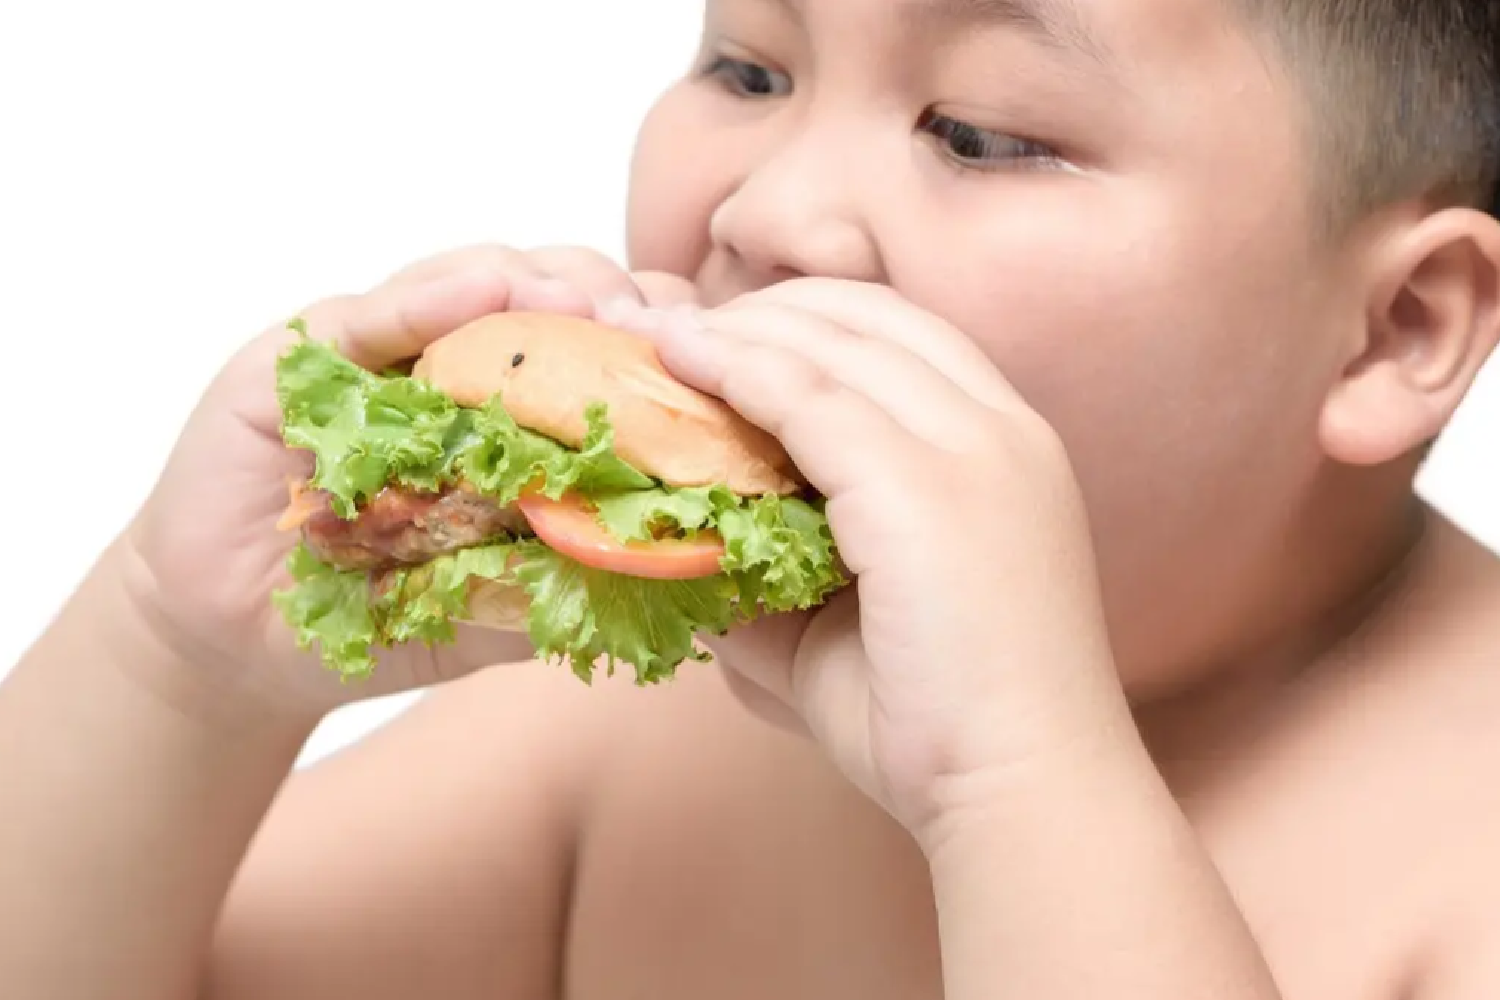 孩子小小年纪肚子挺大,其实是正常现象,两个指标判断是否肥胖